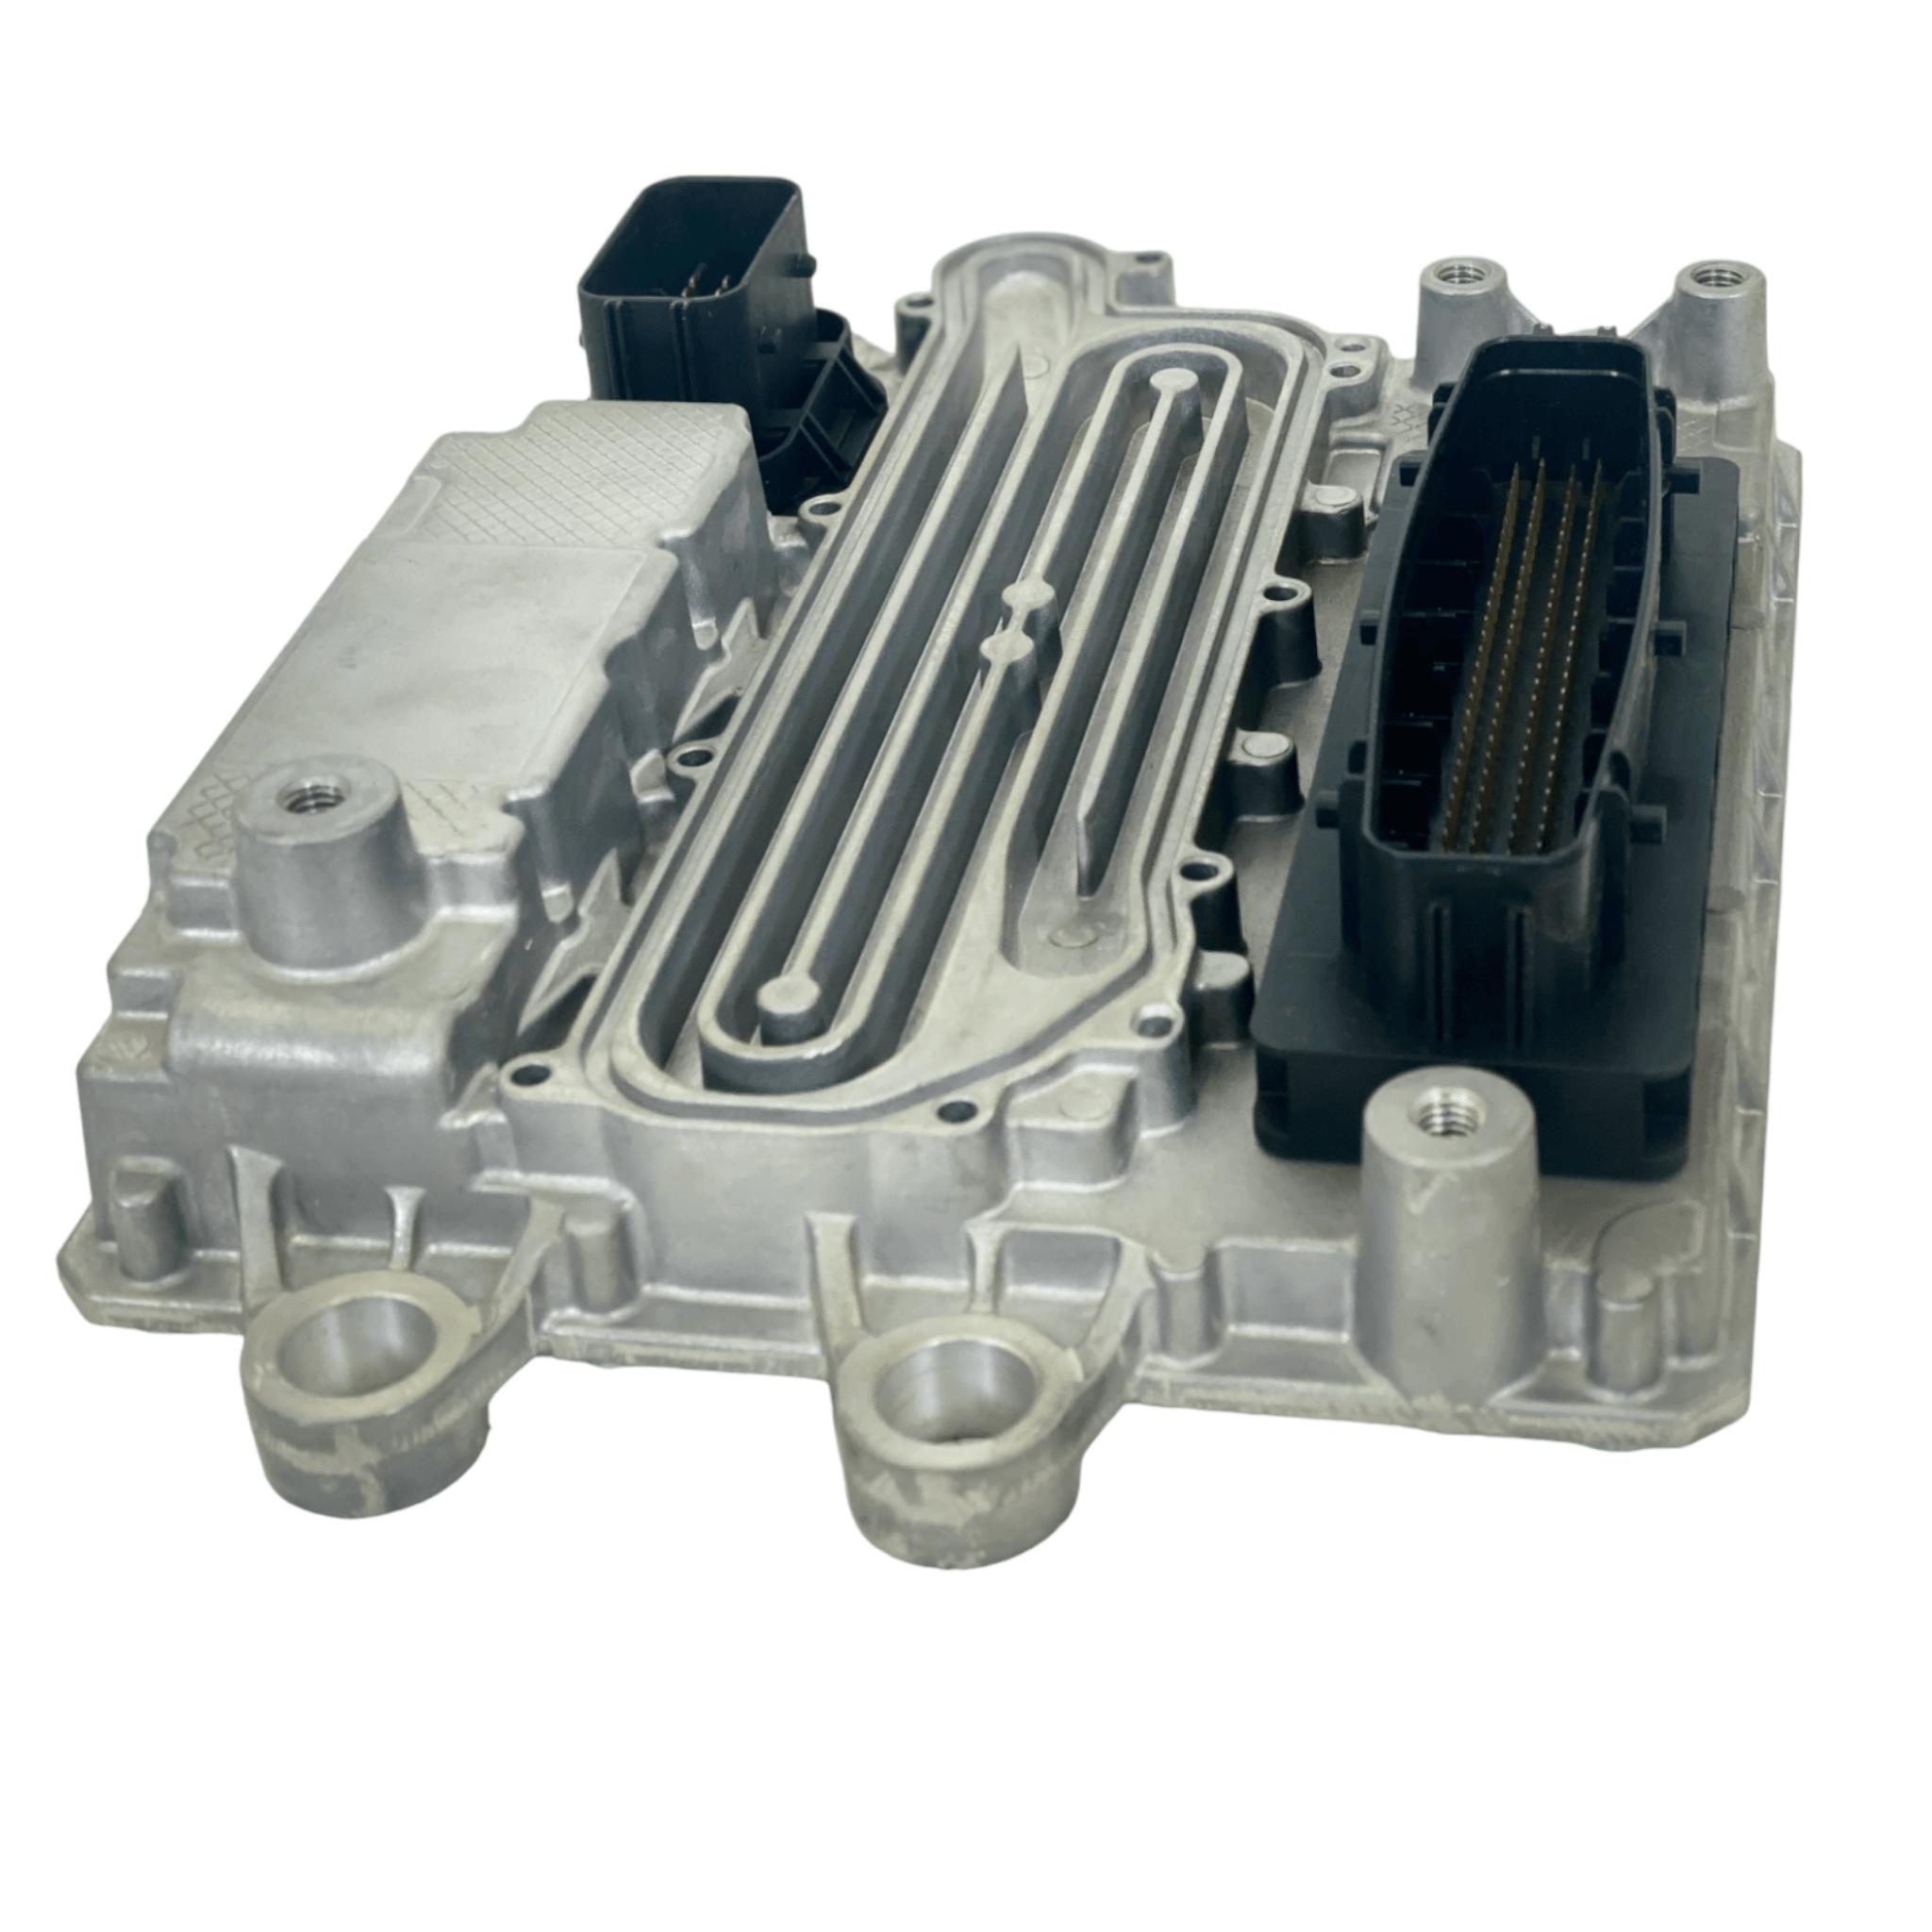 Ea0004461554 Genuine Detroit Diesel® Acm After Treatment Control Module - ADVANCED TRUCK PARTS